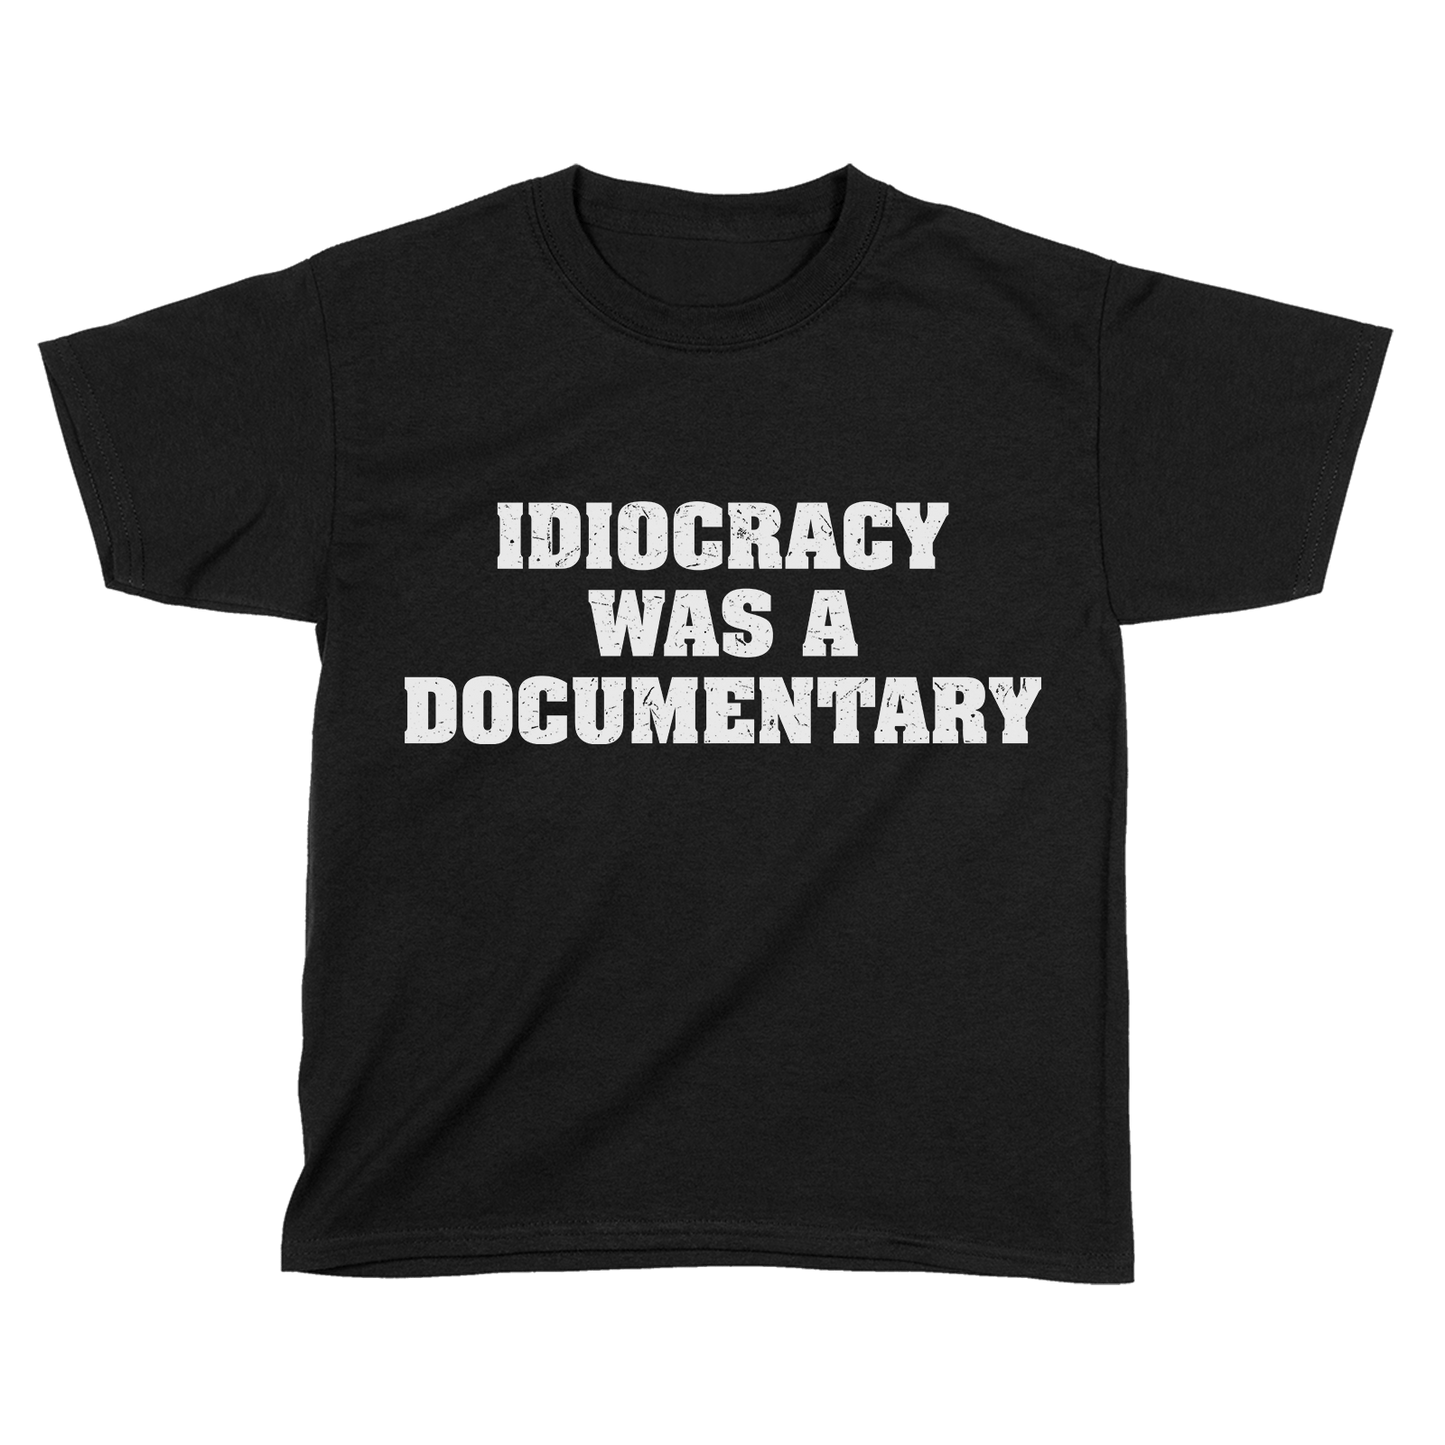 Apparel Premium Kids Shirt / Black / YXS Idiocracy was a Documentary - Kids